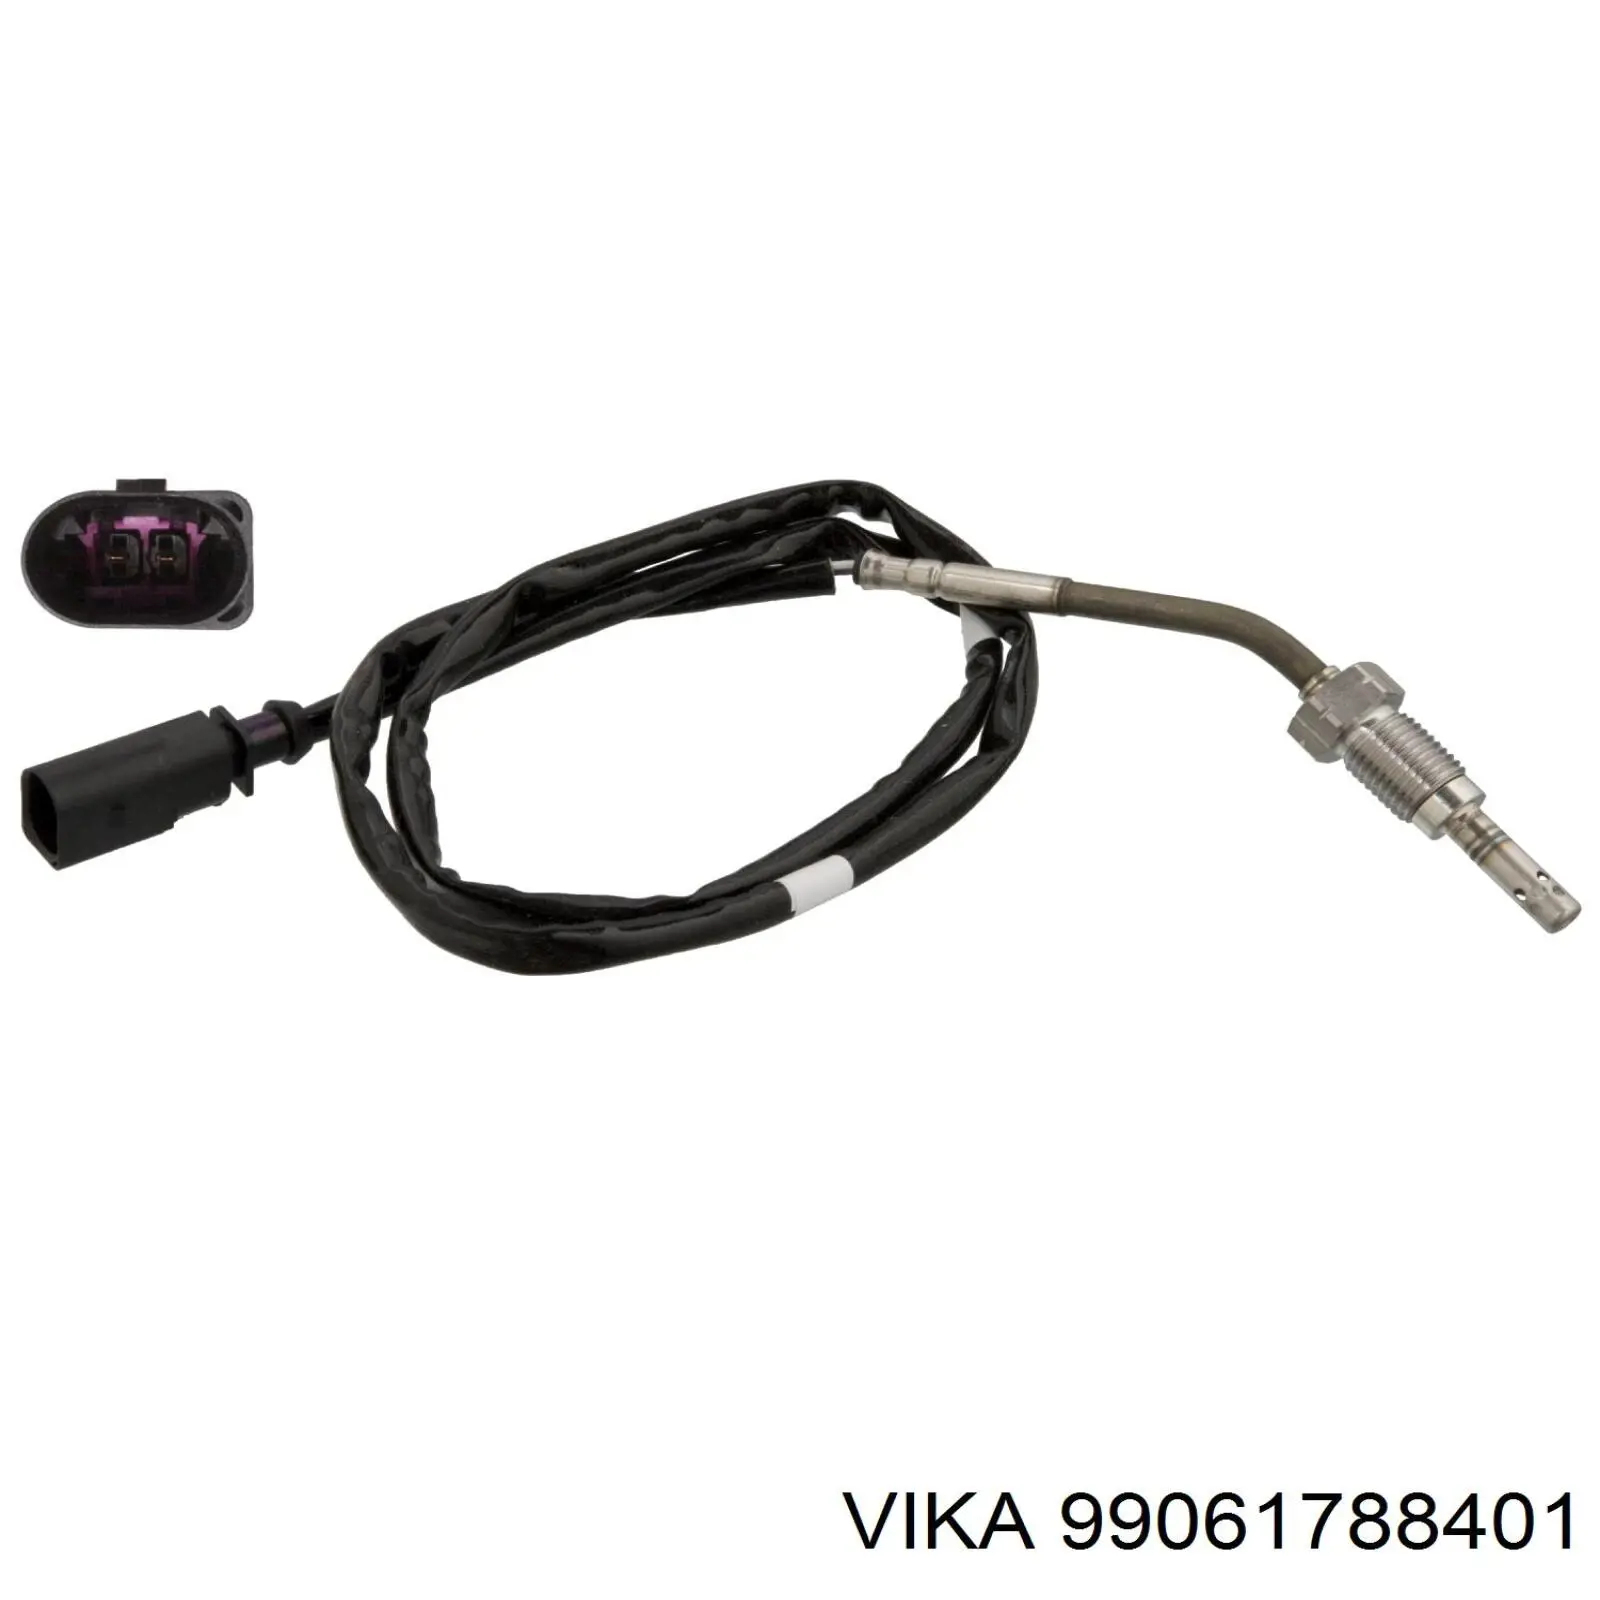 99061788401 Vika sensor de temperatura, gas de escape, antes de turbina